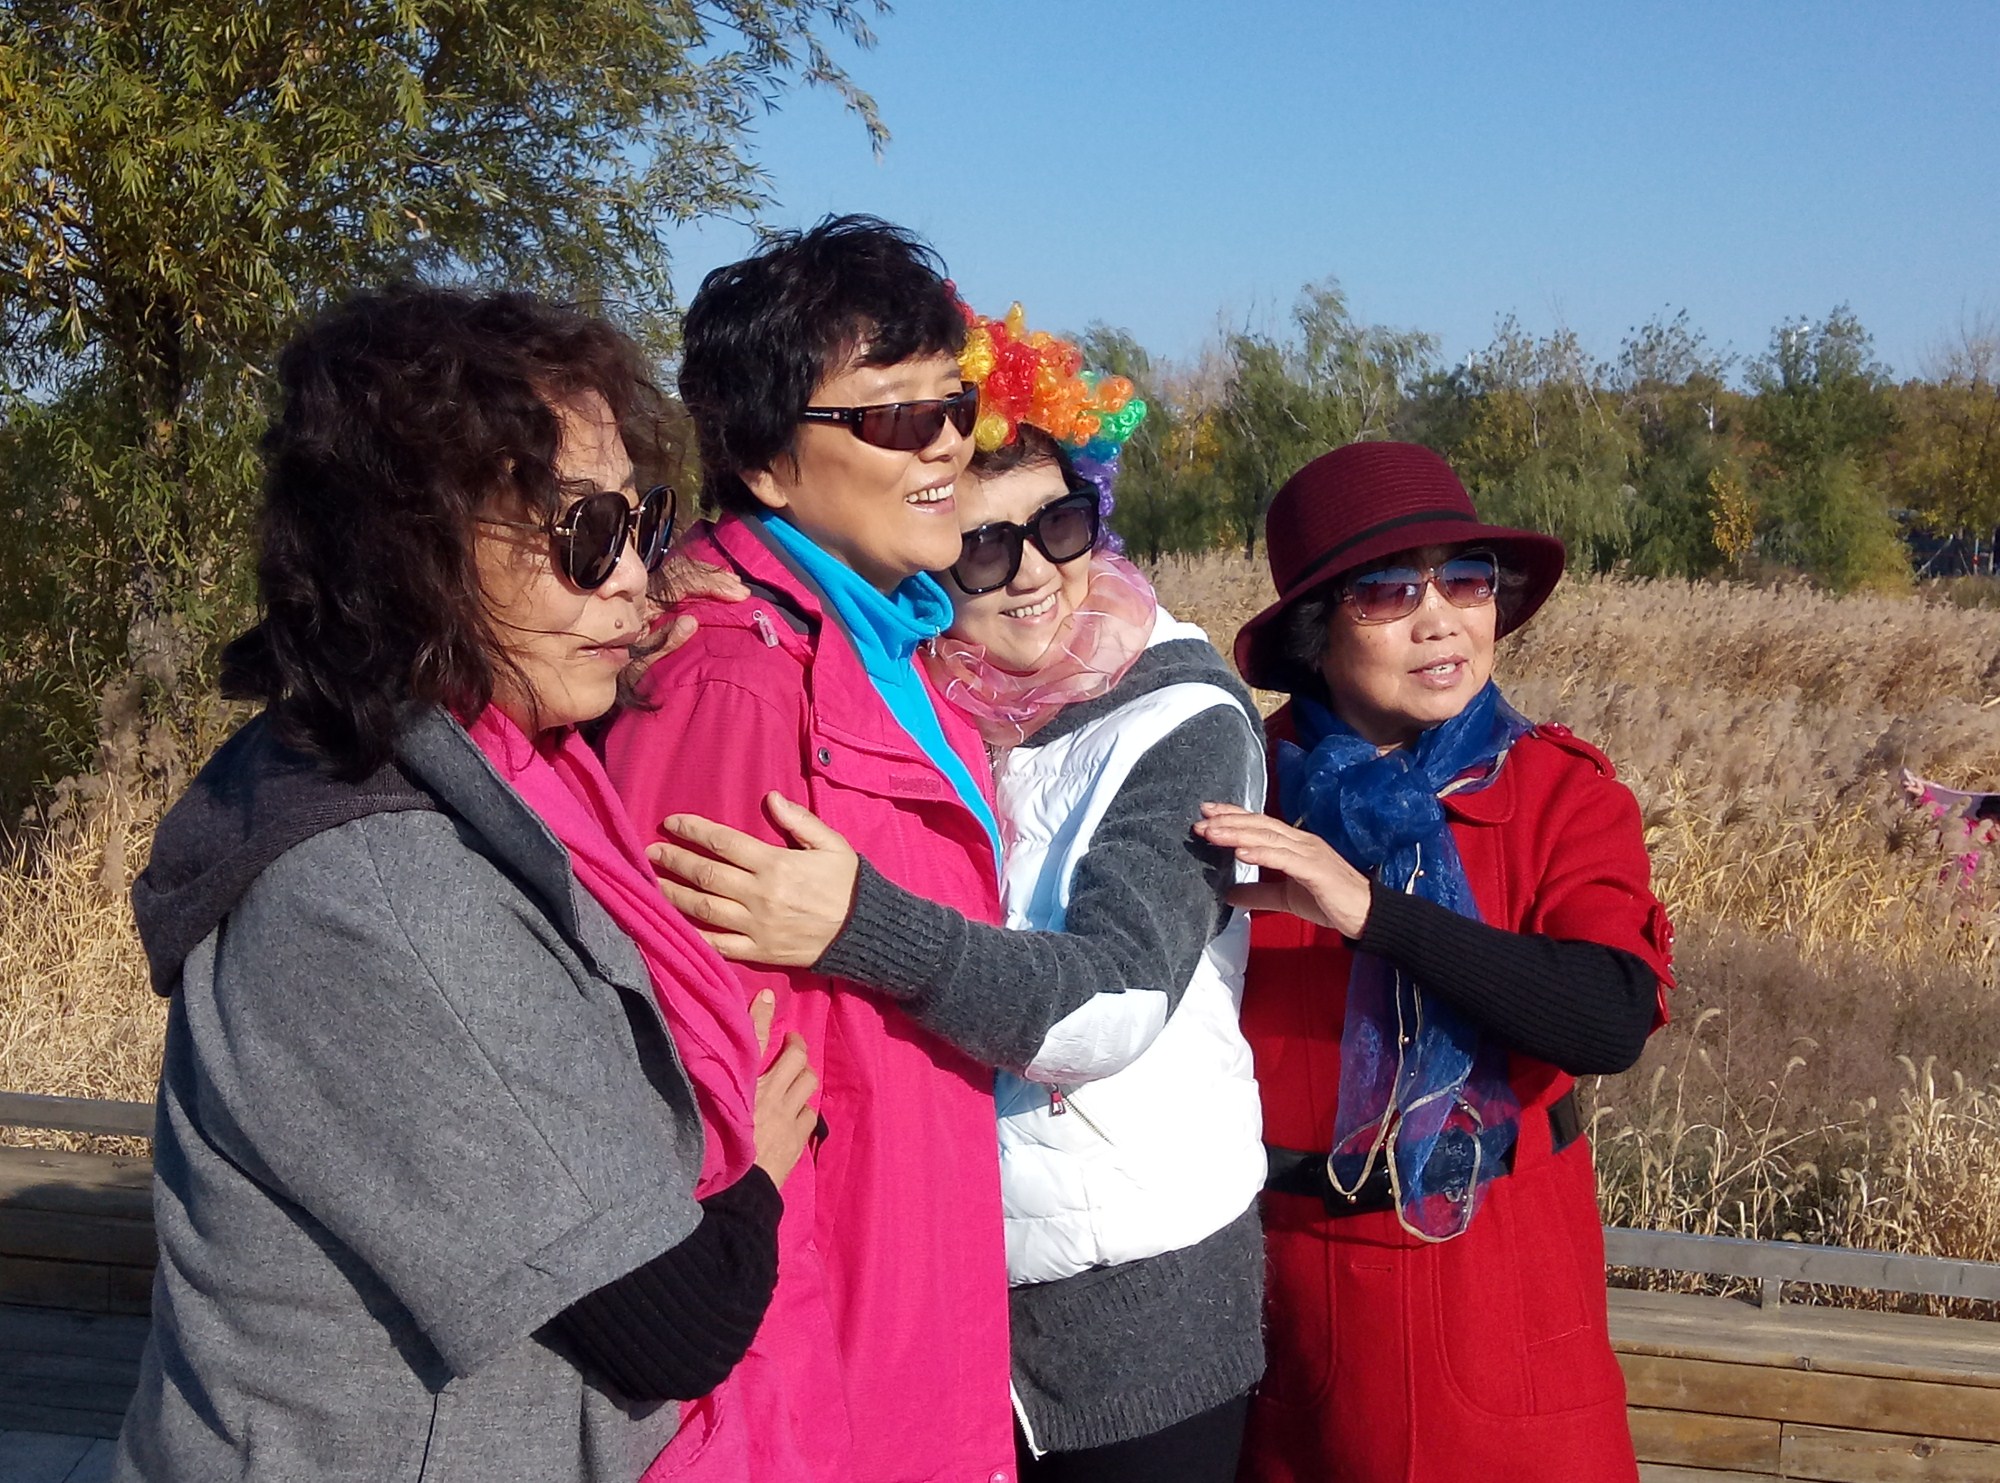 （緩）遼寧銀齡藝術學校開展重陽節臥龍湖一日遊活動